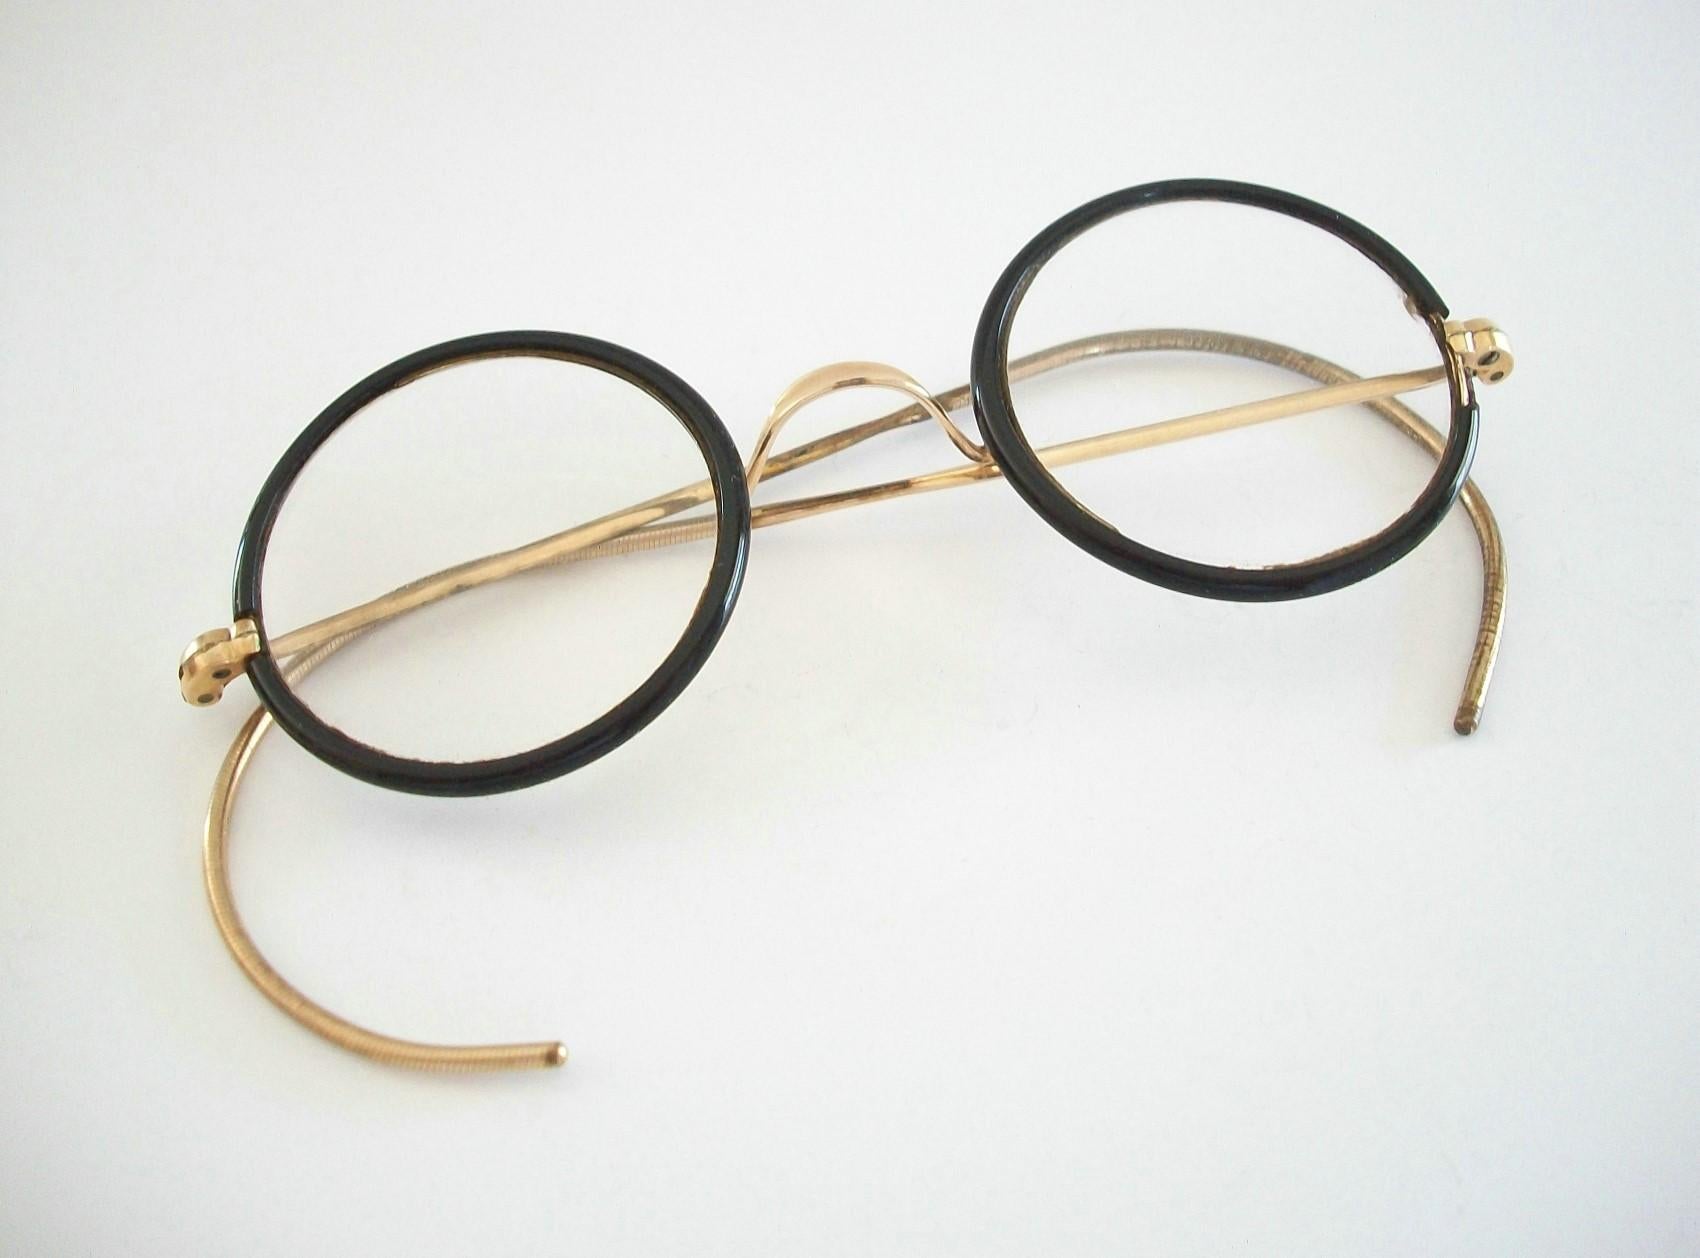 BAUSCH & LOMB - Vintage schwarz emaillierte runde Kinderbrille mit goldfarbenem Nasensteg und Bügeln - mit verschreibungspflichtigen Gläsern - hochwertige Fassung - signiert B&L (siehe Foto) - Kanada - ca. 1940er Jahre.

Guter Vintage-Zustand -